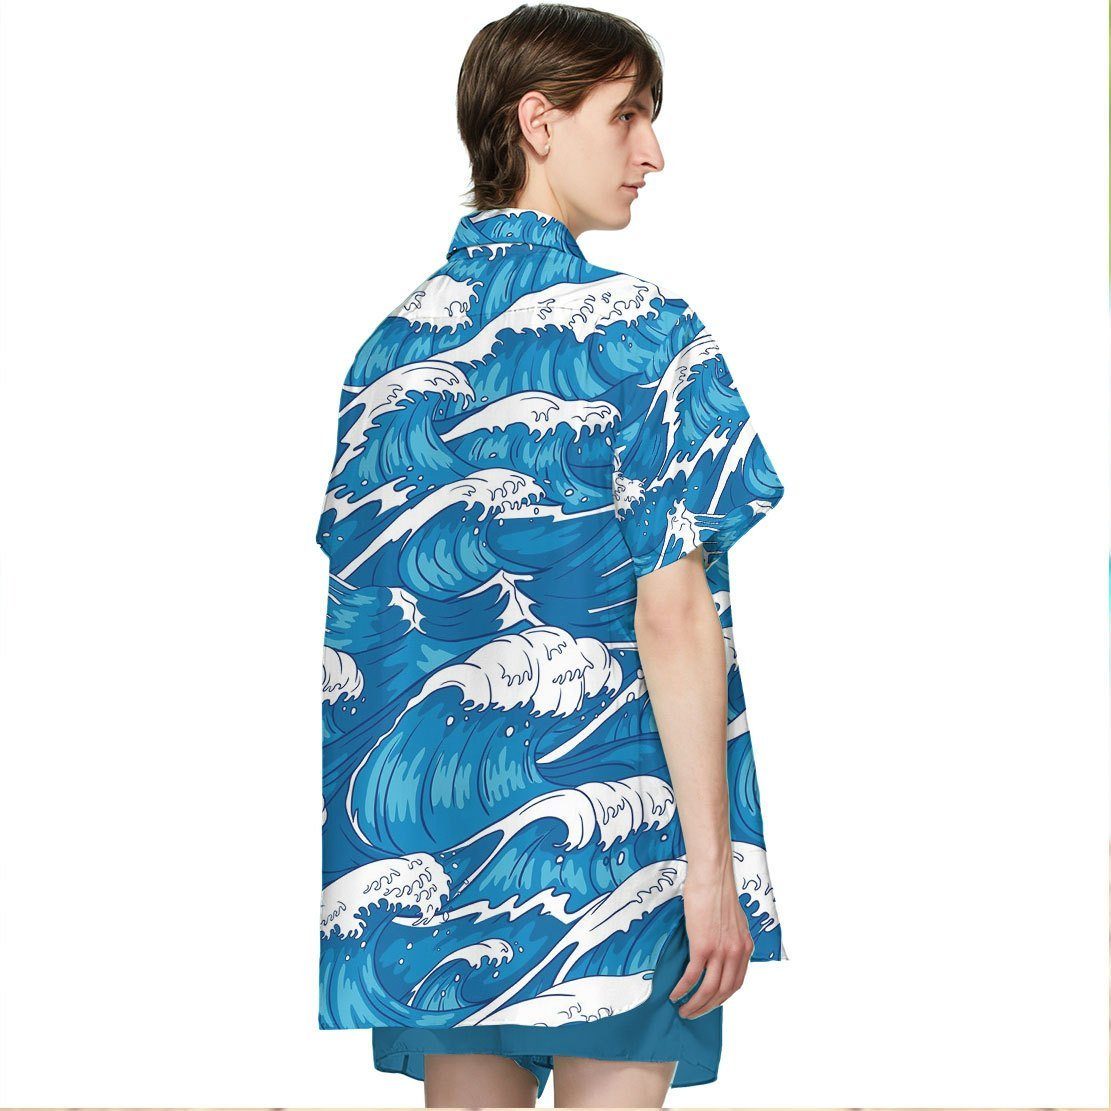 Gearhumans T Rex Surfing Hawaii Shirt ZK1305217 Hawai Shirt 